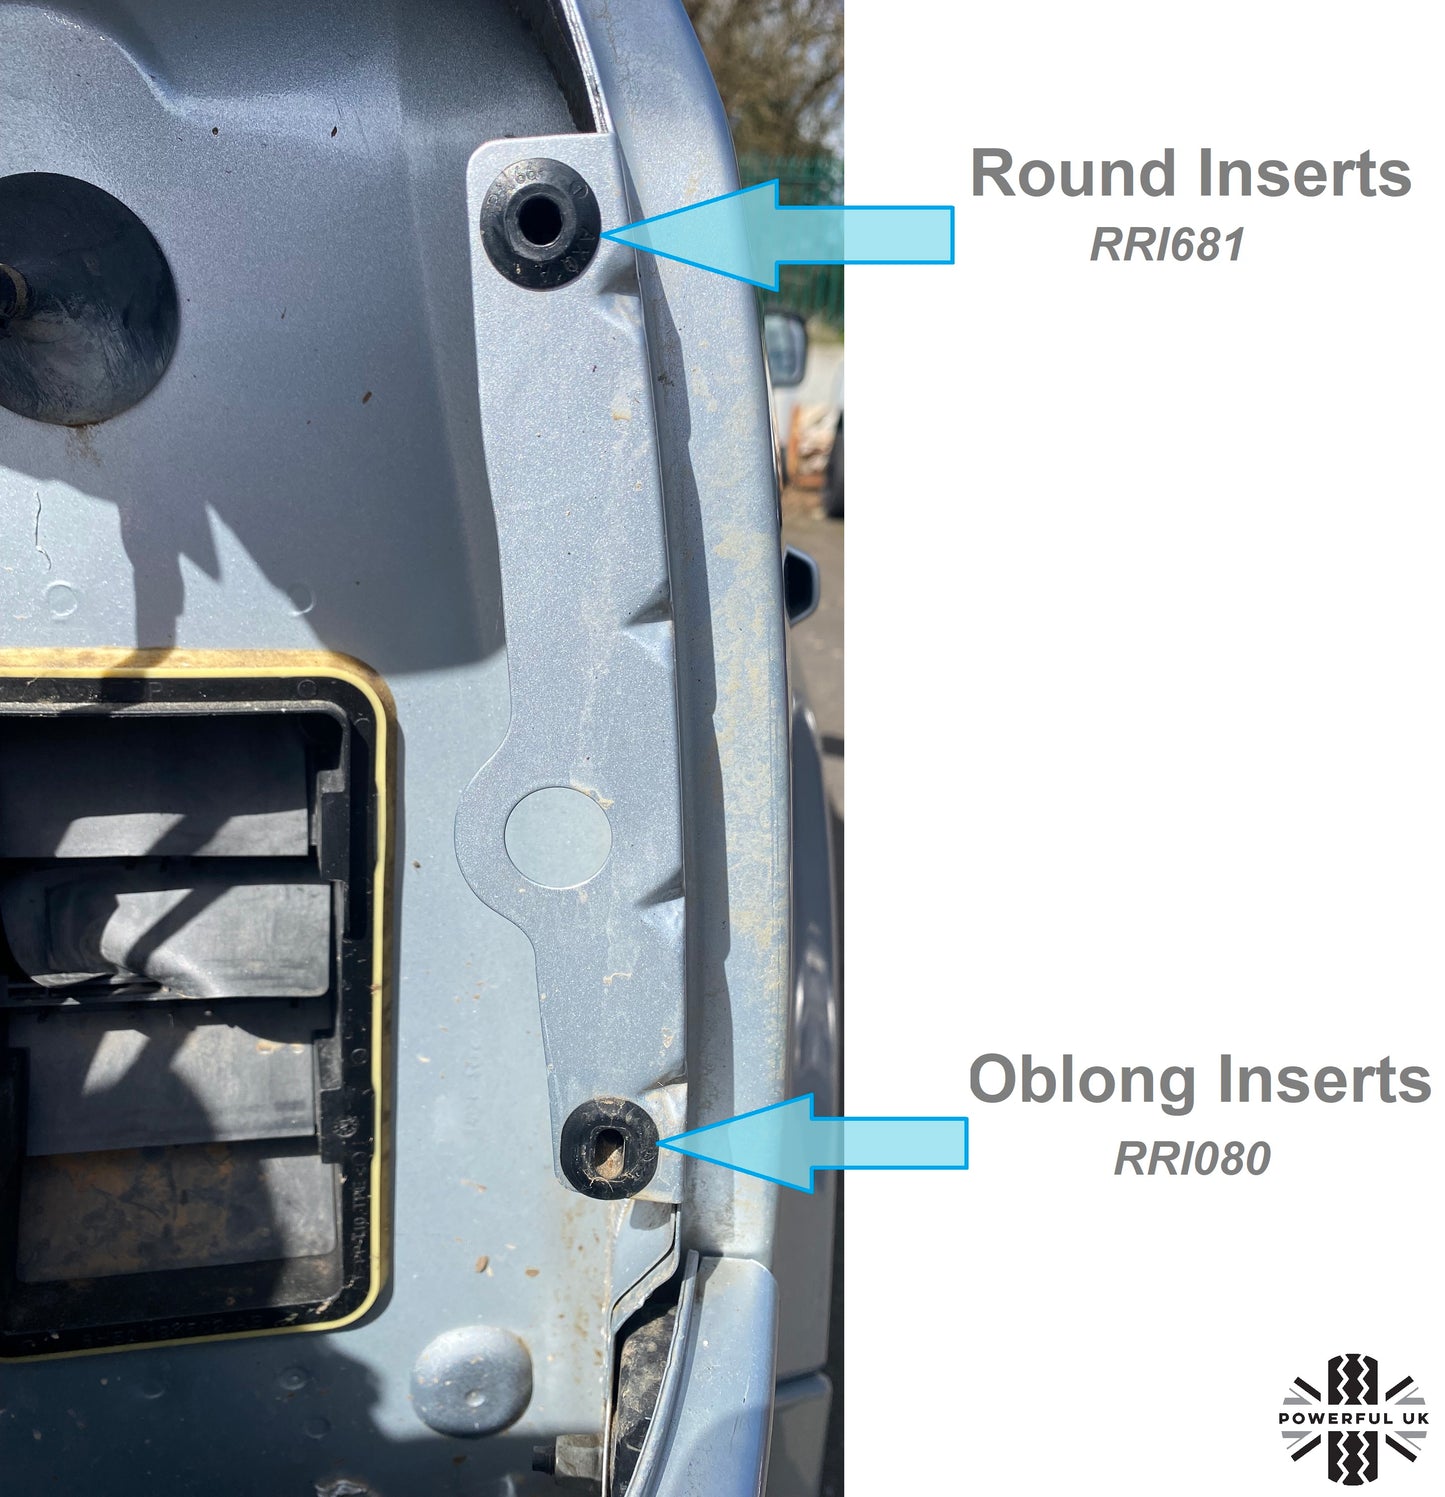 Docking Insert Grommets for Range Rover L322 (2010-12) Rear Lights - Pair (Bottom)